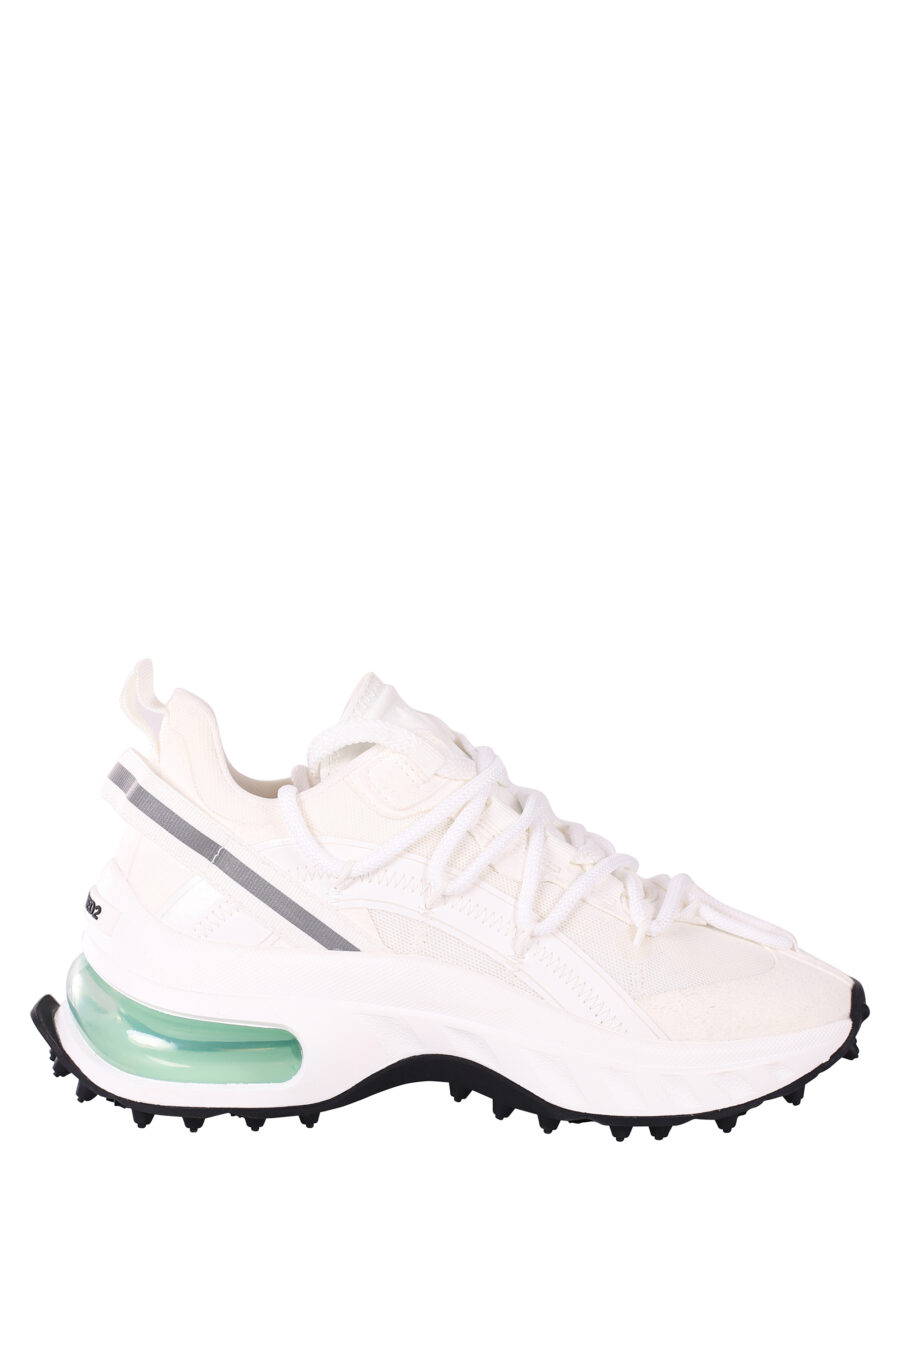 Zapatillas blancas con camara de aire verde - IMG 5836